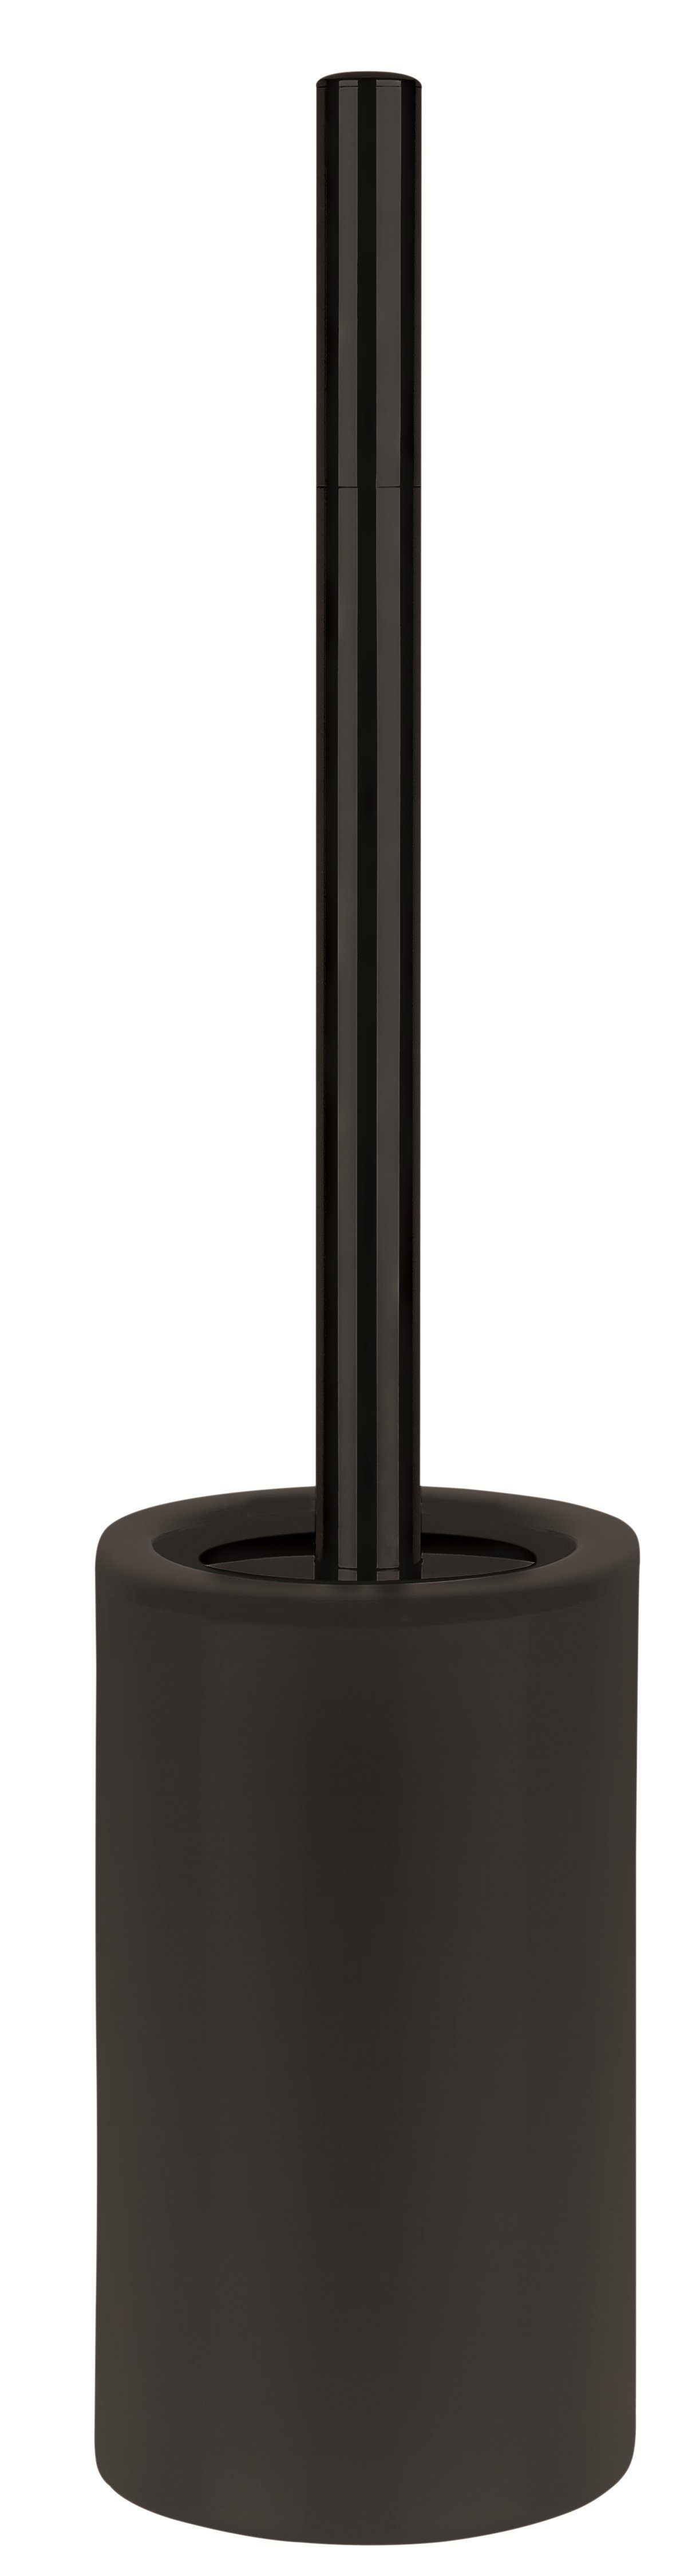 spirella Toilettenpapierhalter WC-Bürste TUBE-MATT, Toilettenbürste Serie Matt-Optik, Keramik, Bad-Accessoires zu Passend TUBE-MATT anderen hochwertiger elegante schwarz, der aus